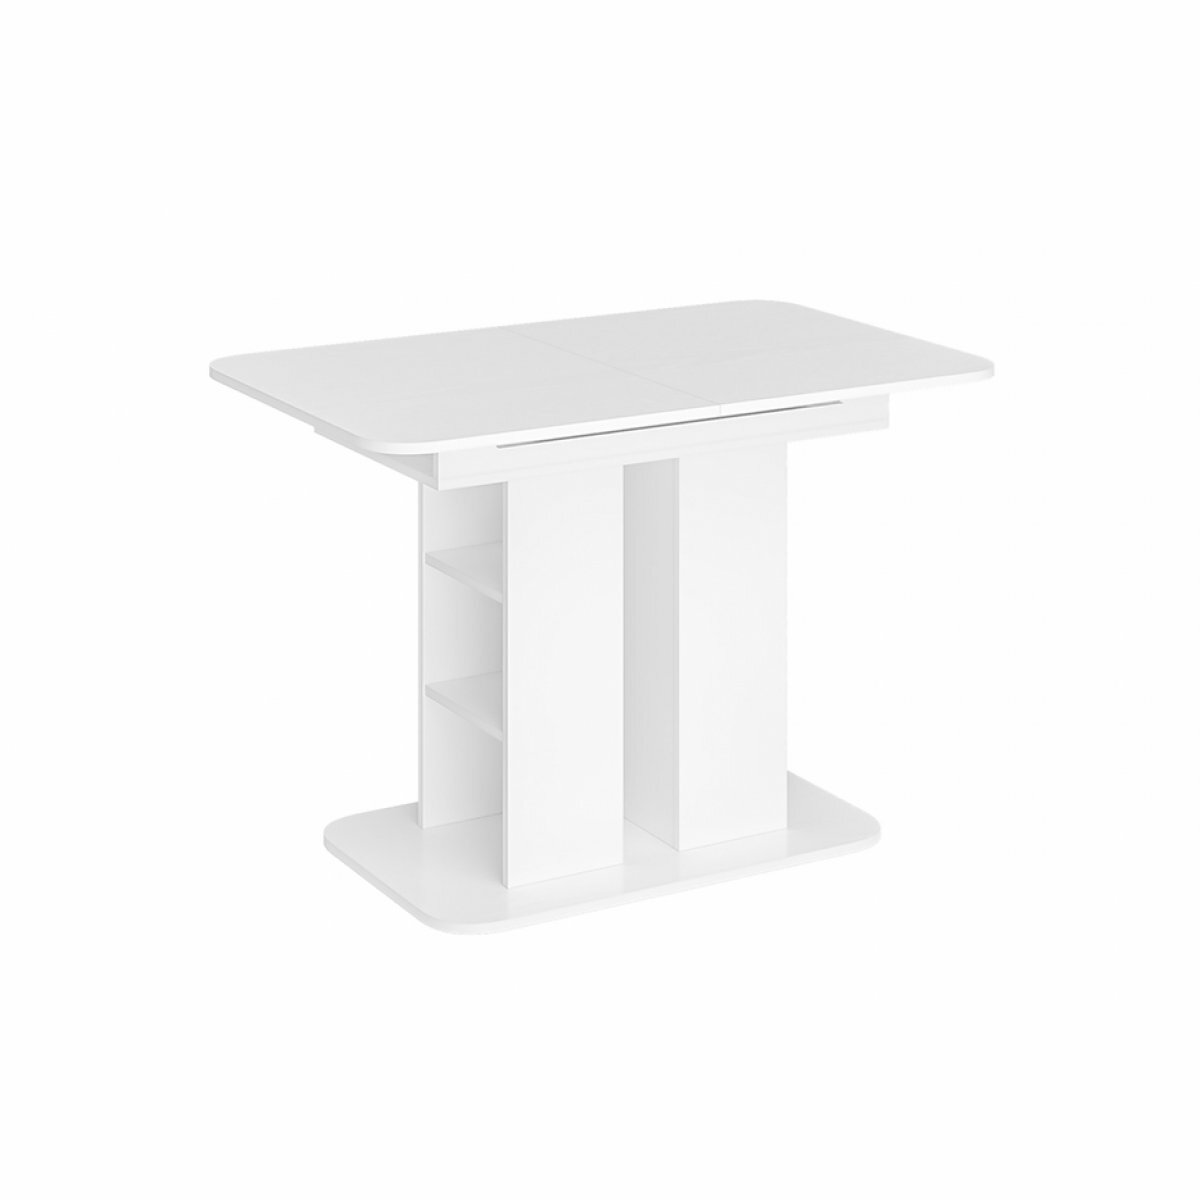 Стол обеденный раздвижной "Оливер-04" - Белое дерево